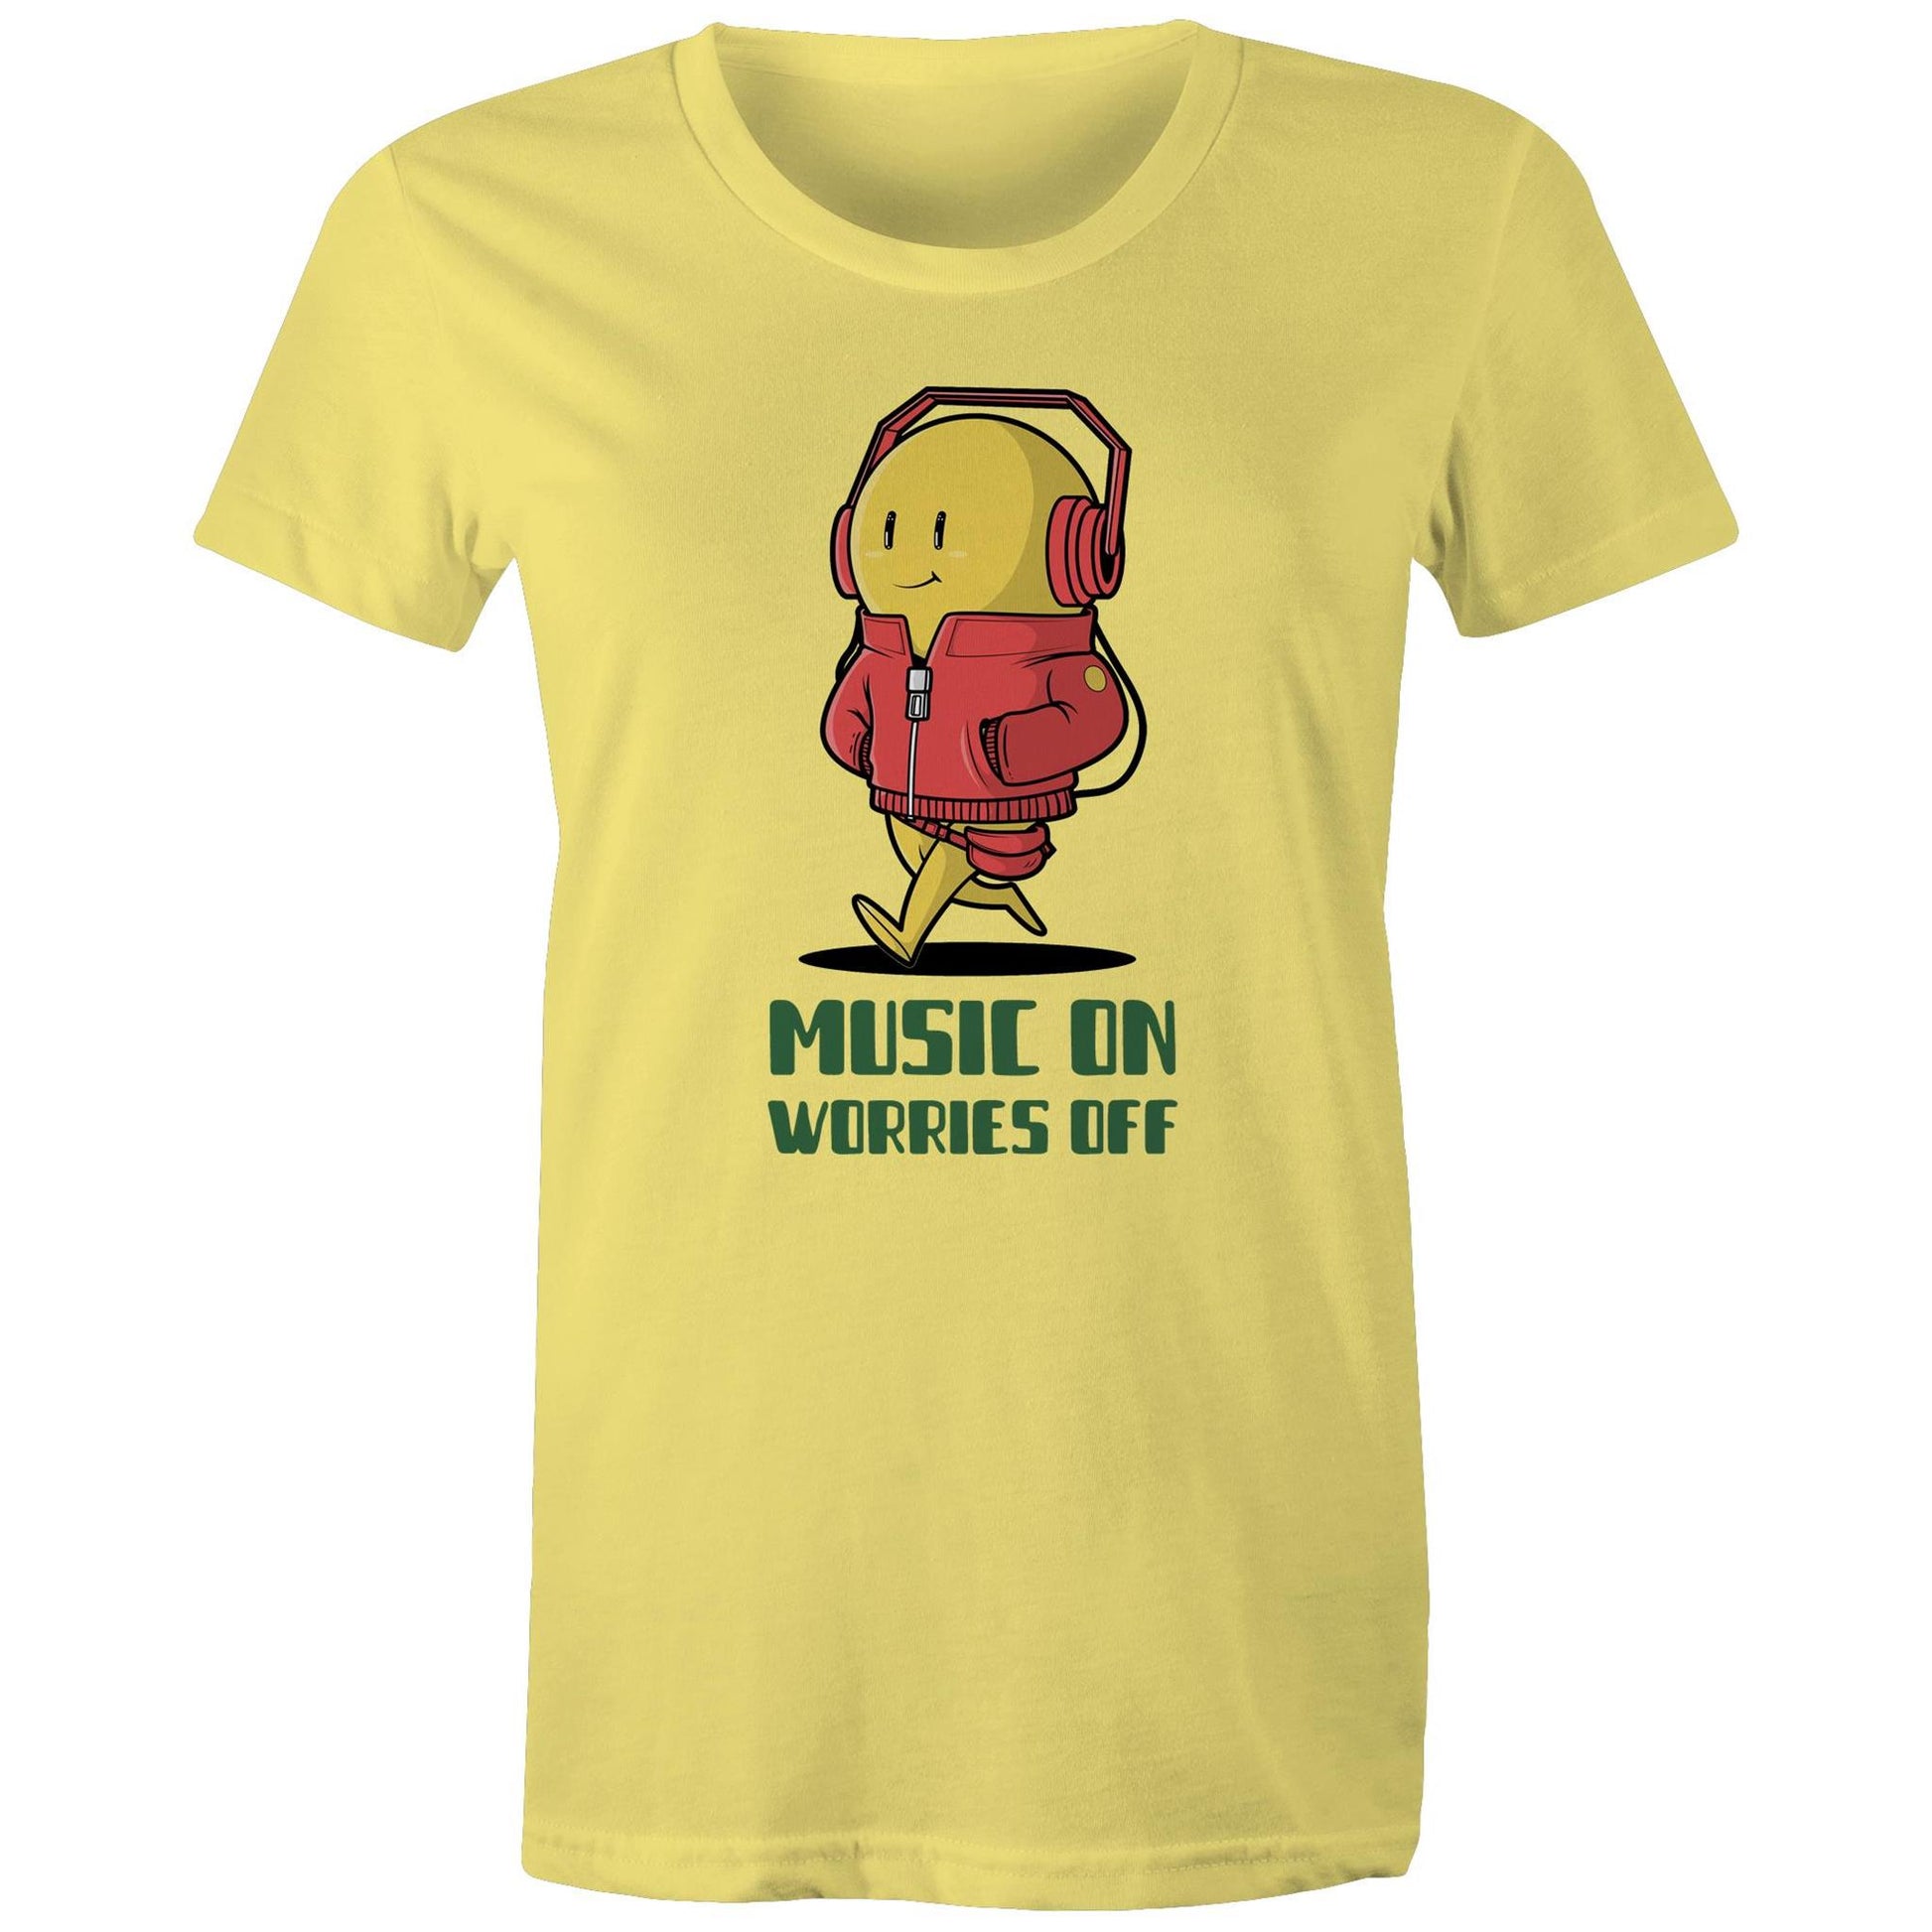 Music On, Worries Off - Womens T-shirt Yellow Womens T-shirt Music